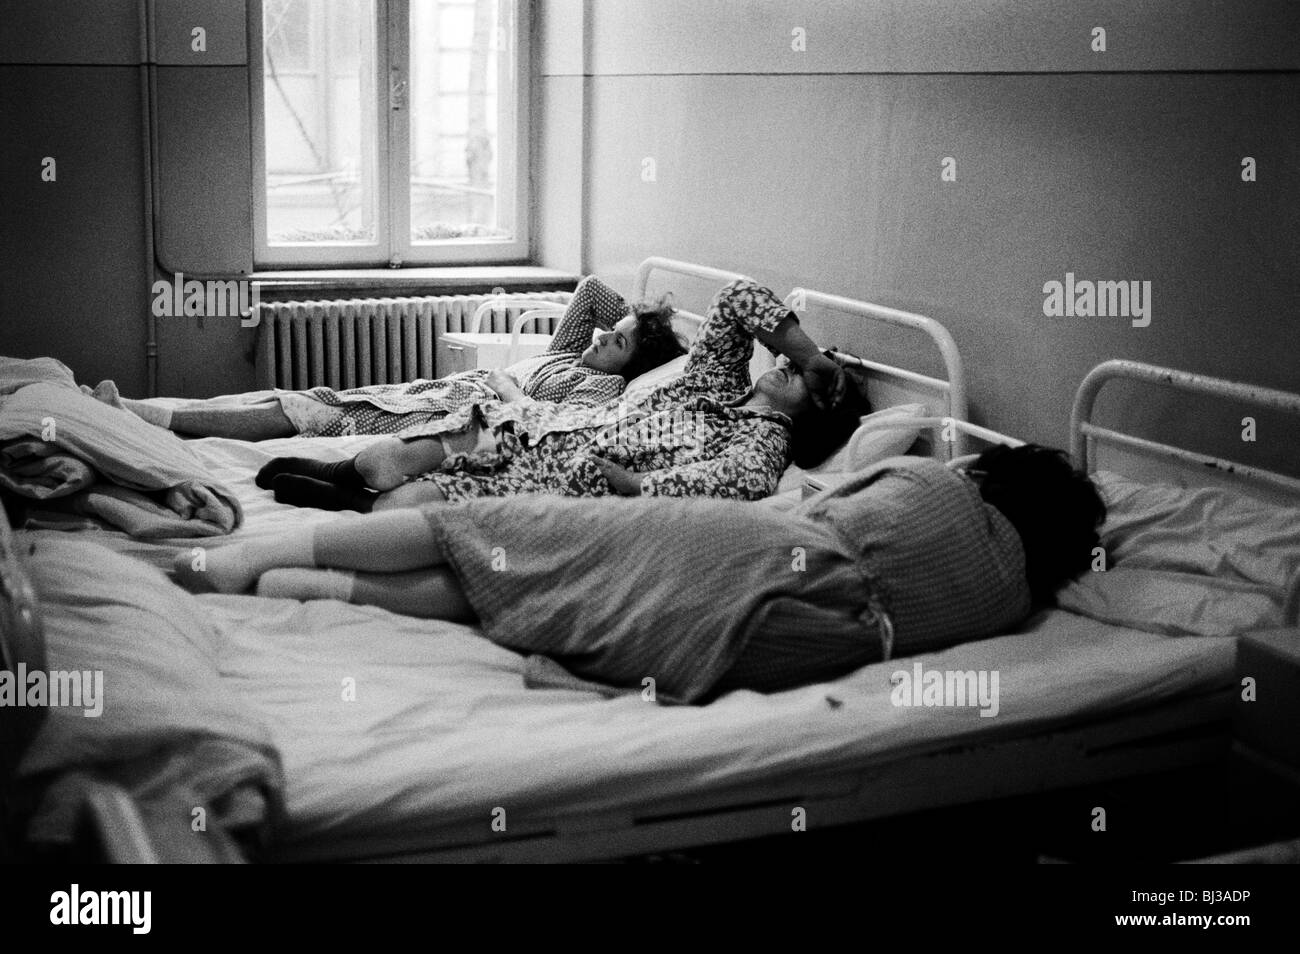 Les femmes en attente d'un avortement partager avec ceux qui se remettent d'un avortement. L'hôpital de Bucarest, Roumanie. Février 1990 Banque D'Images